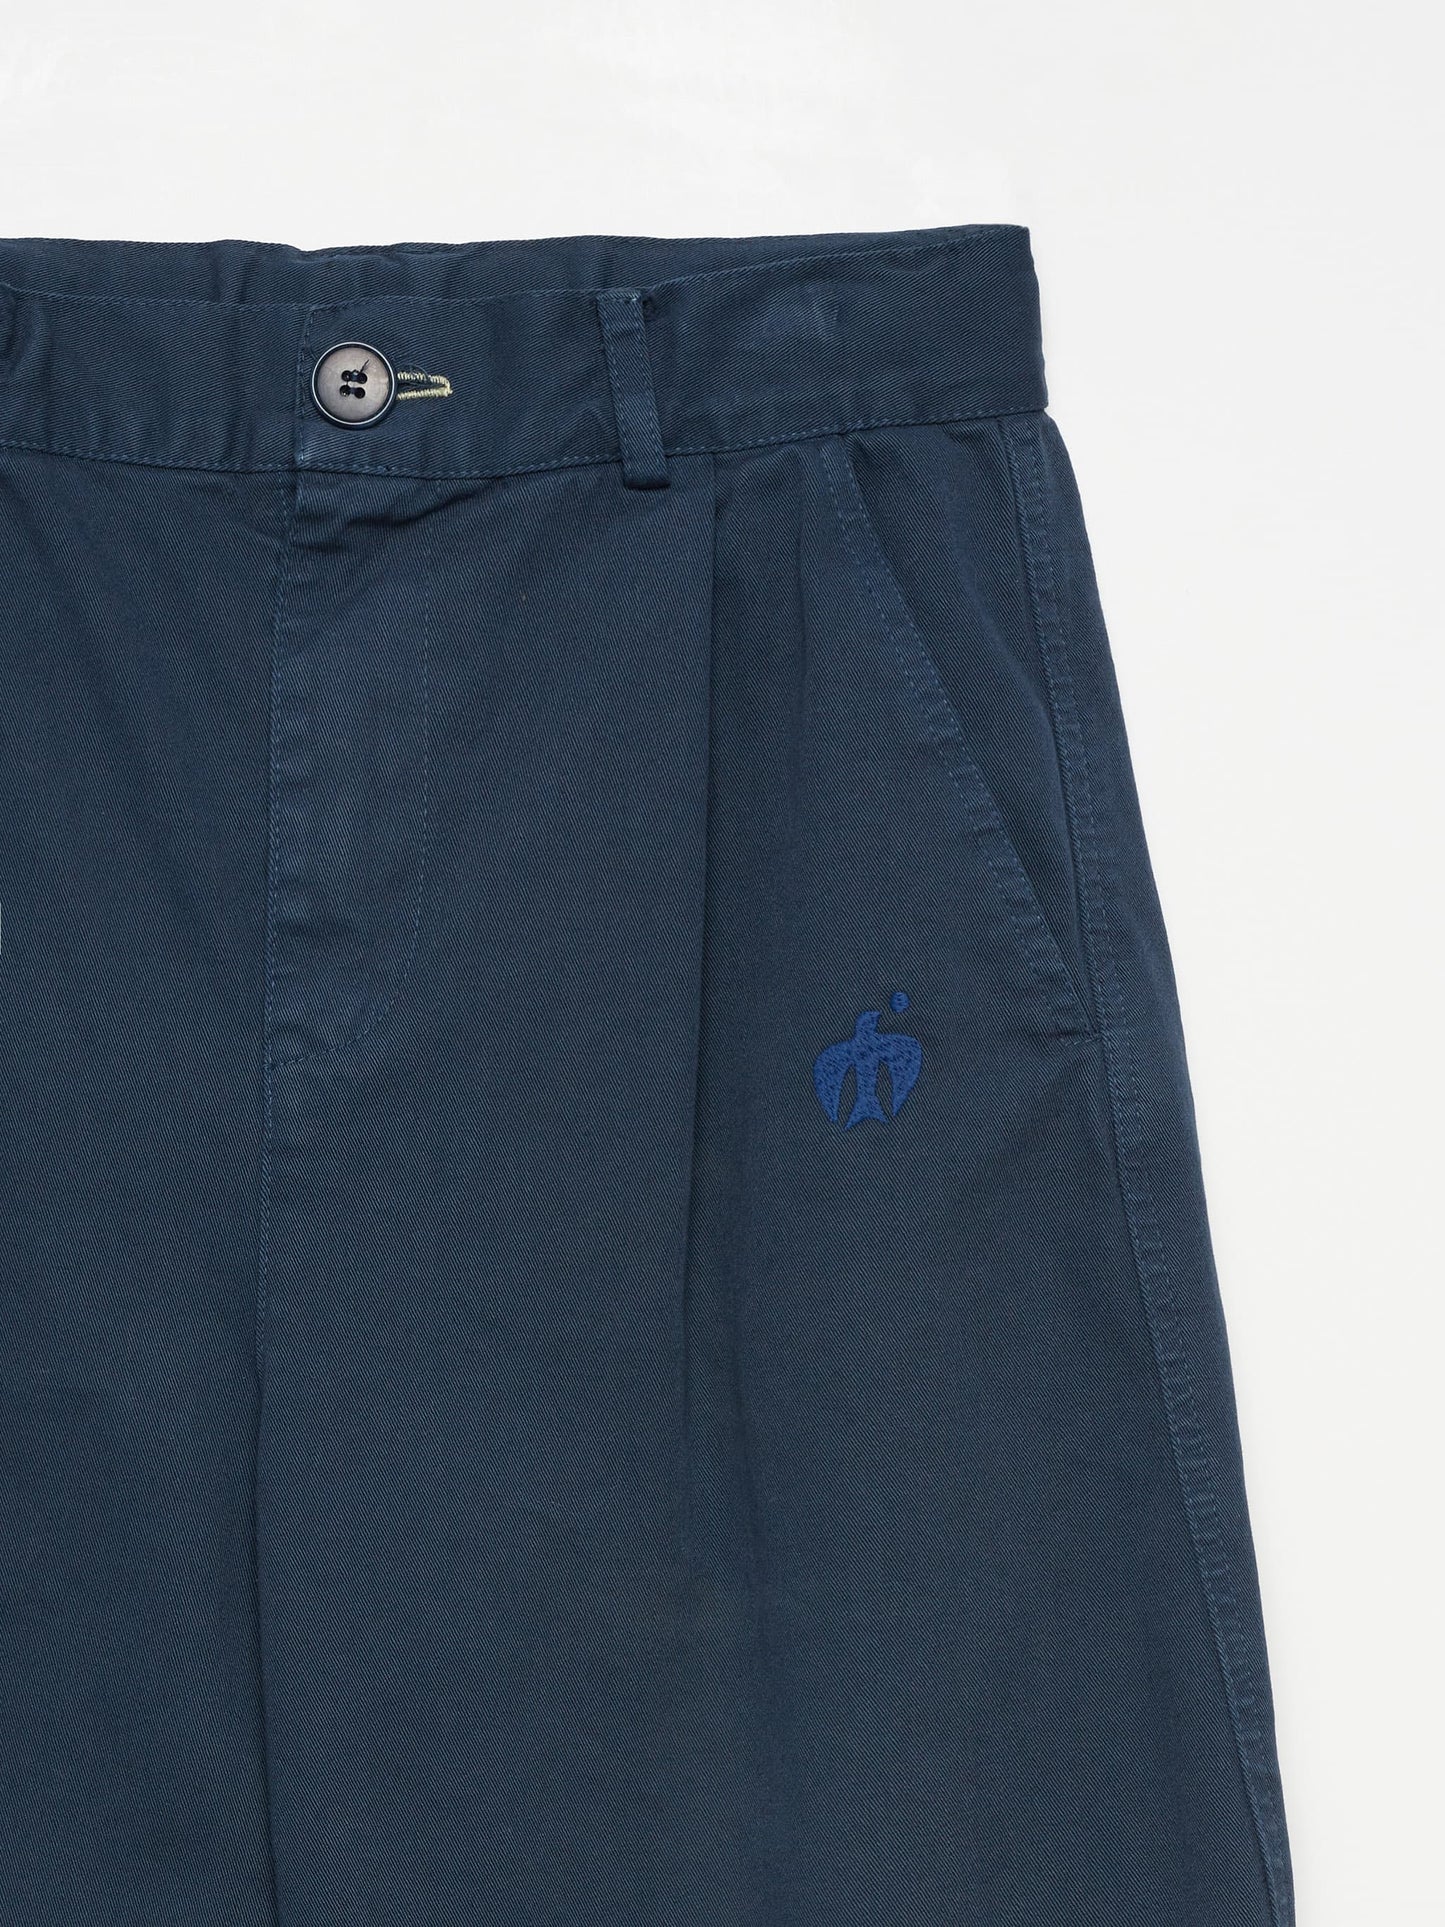 Trousers nº02 Navy Blue